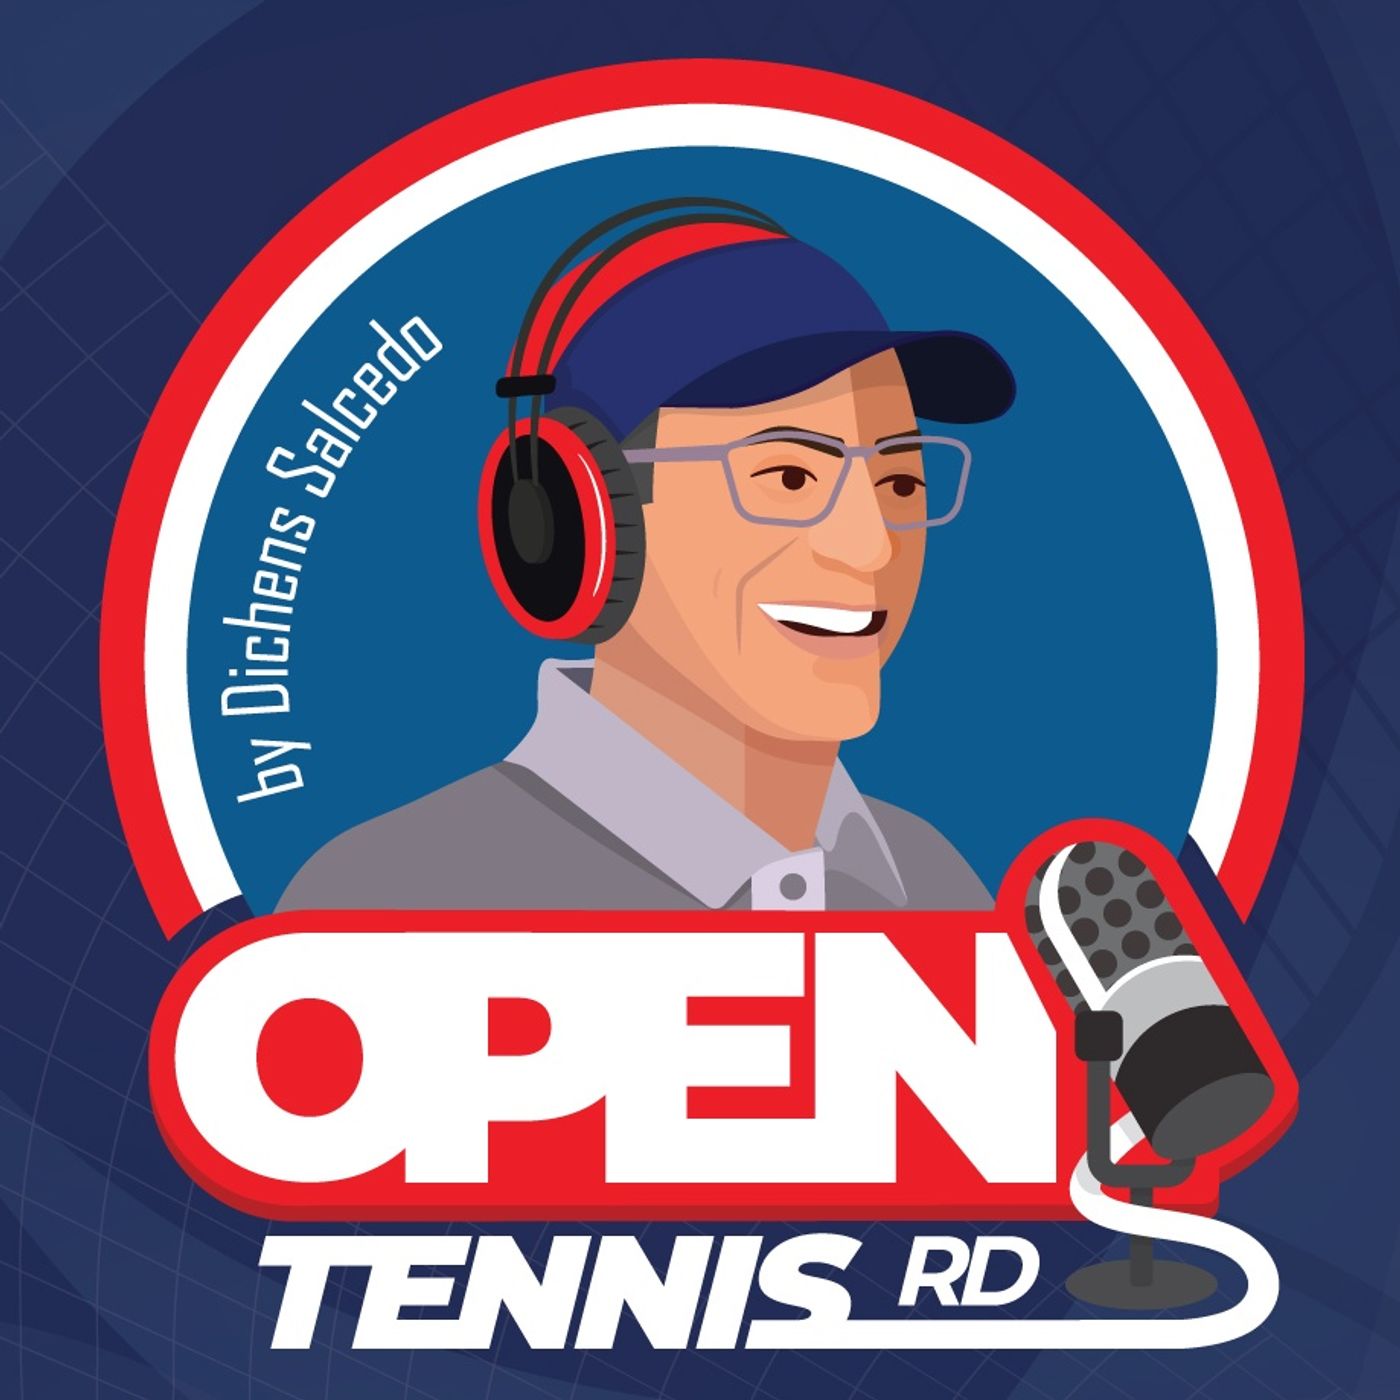 E-41, Novak Djokovic Expulsado del Open de Australia